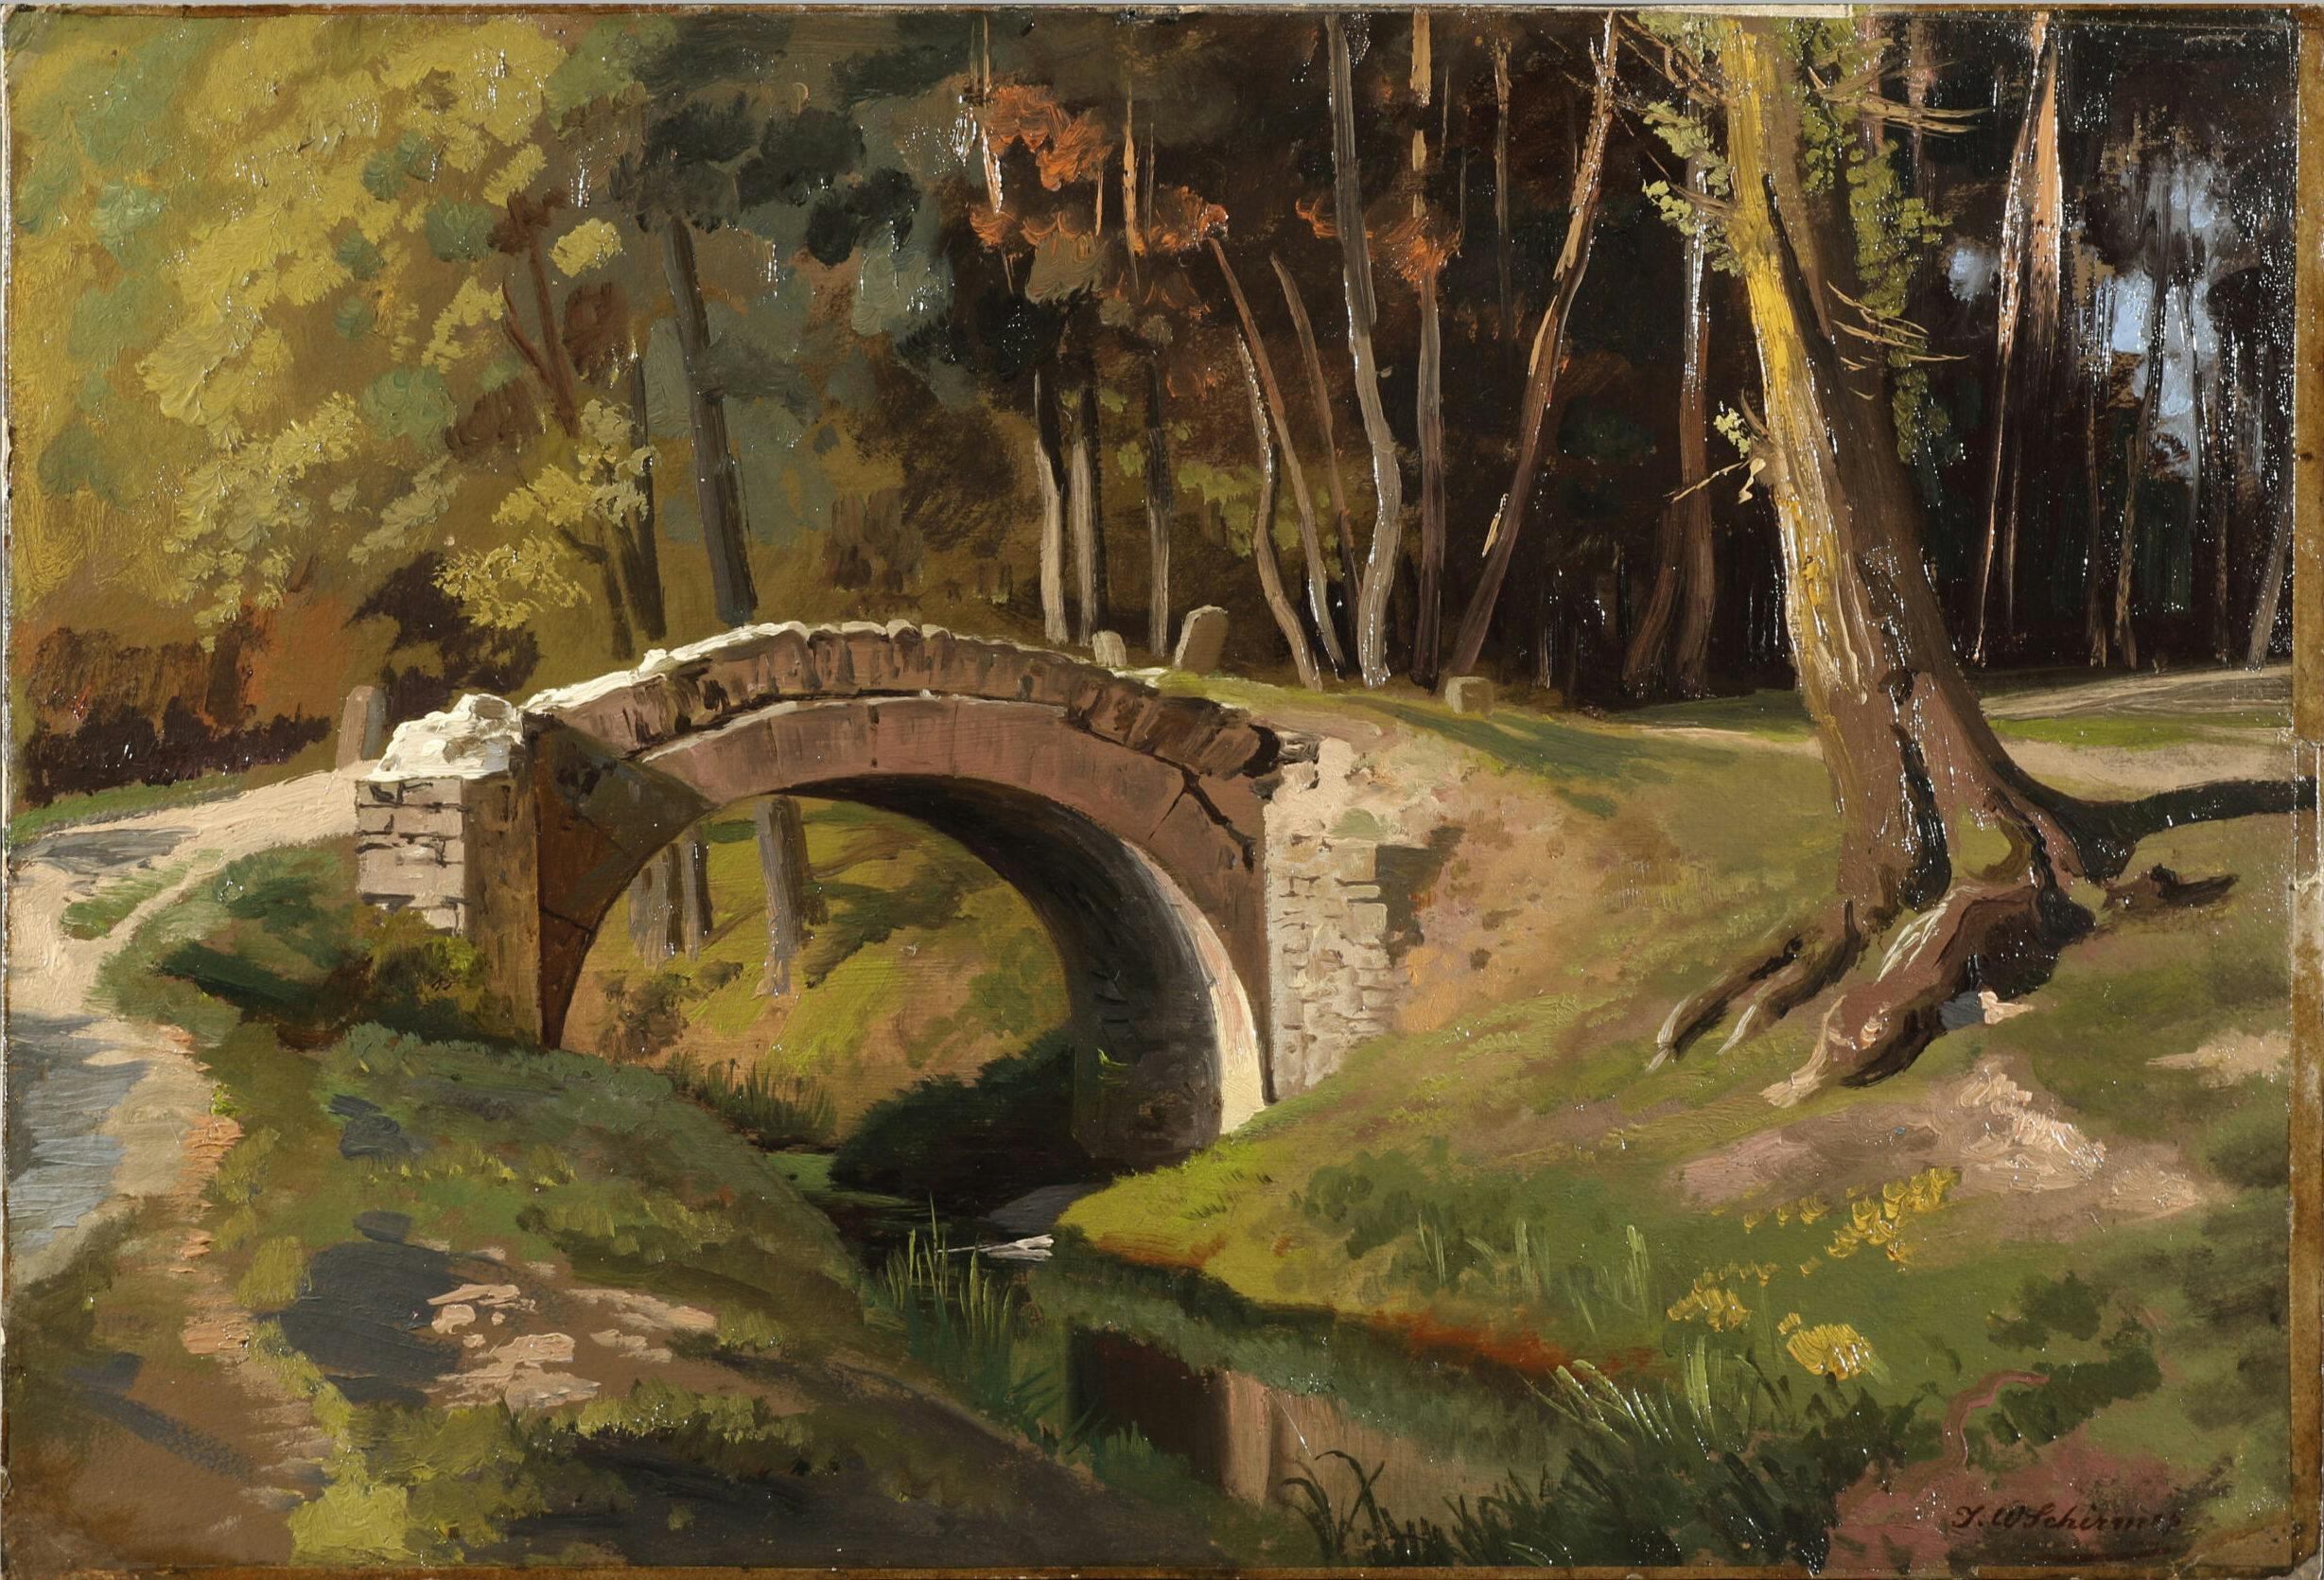 Das Gemälde zeigt eine halbrunde Bogenbrücke über einem kleinen Bach im Wald. Das Bild ist in herbstlichen Farben gehalten.